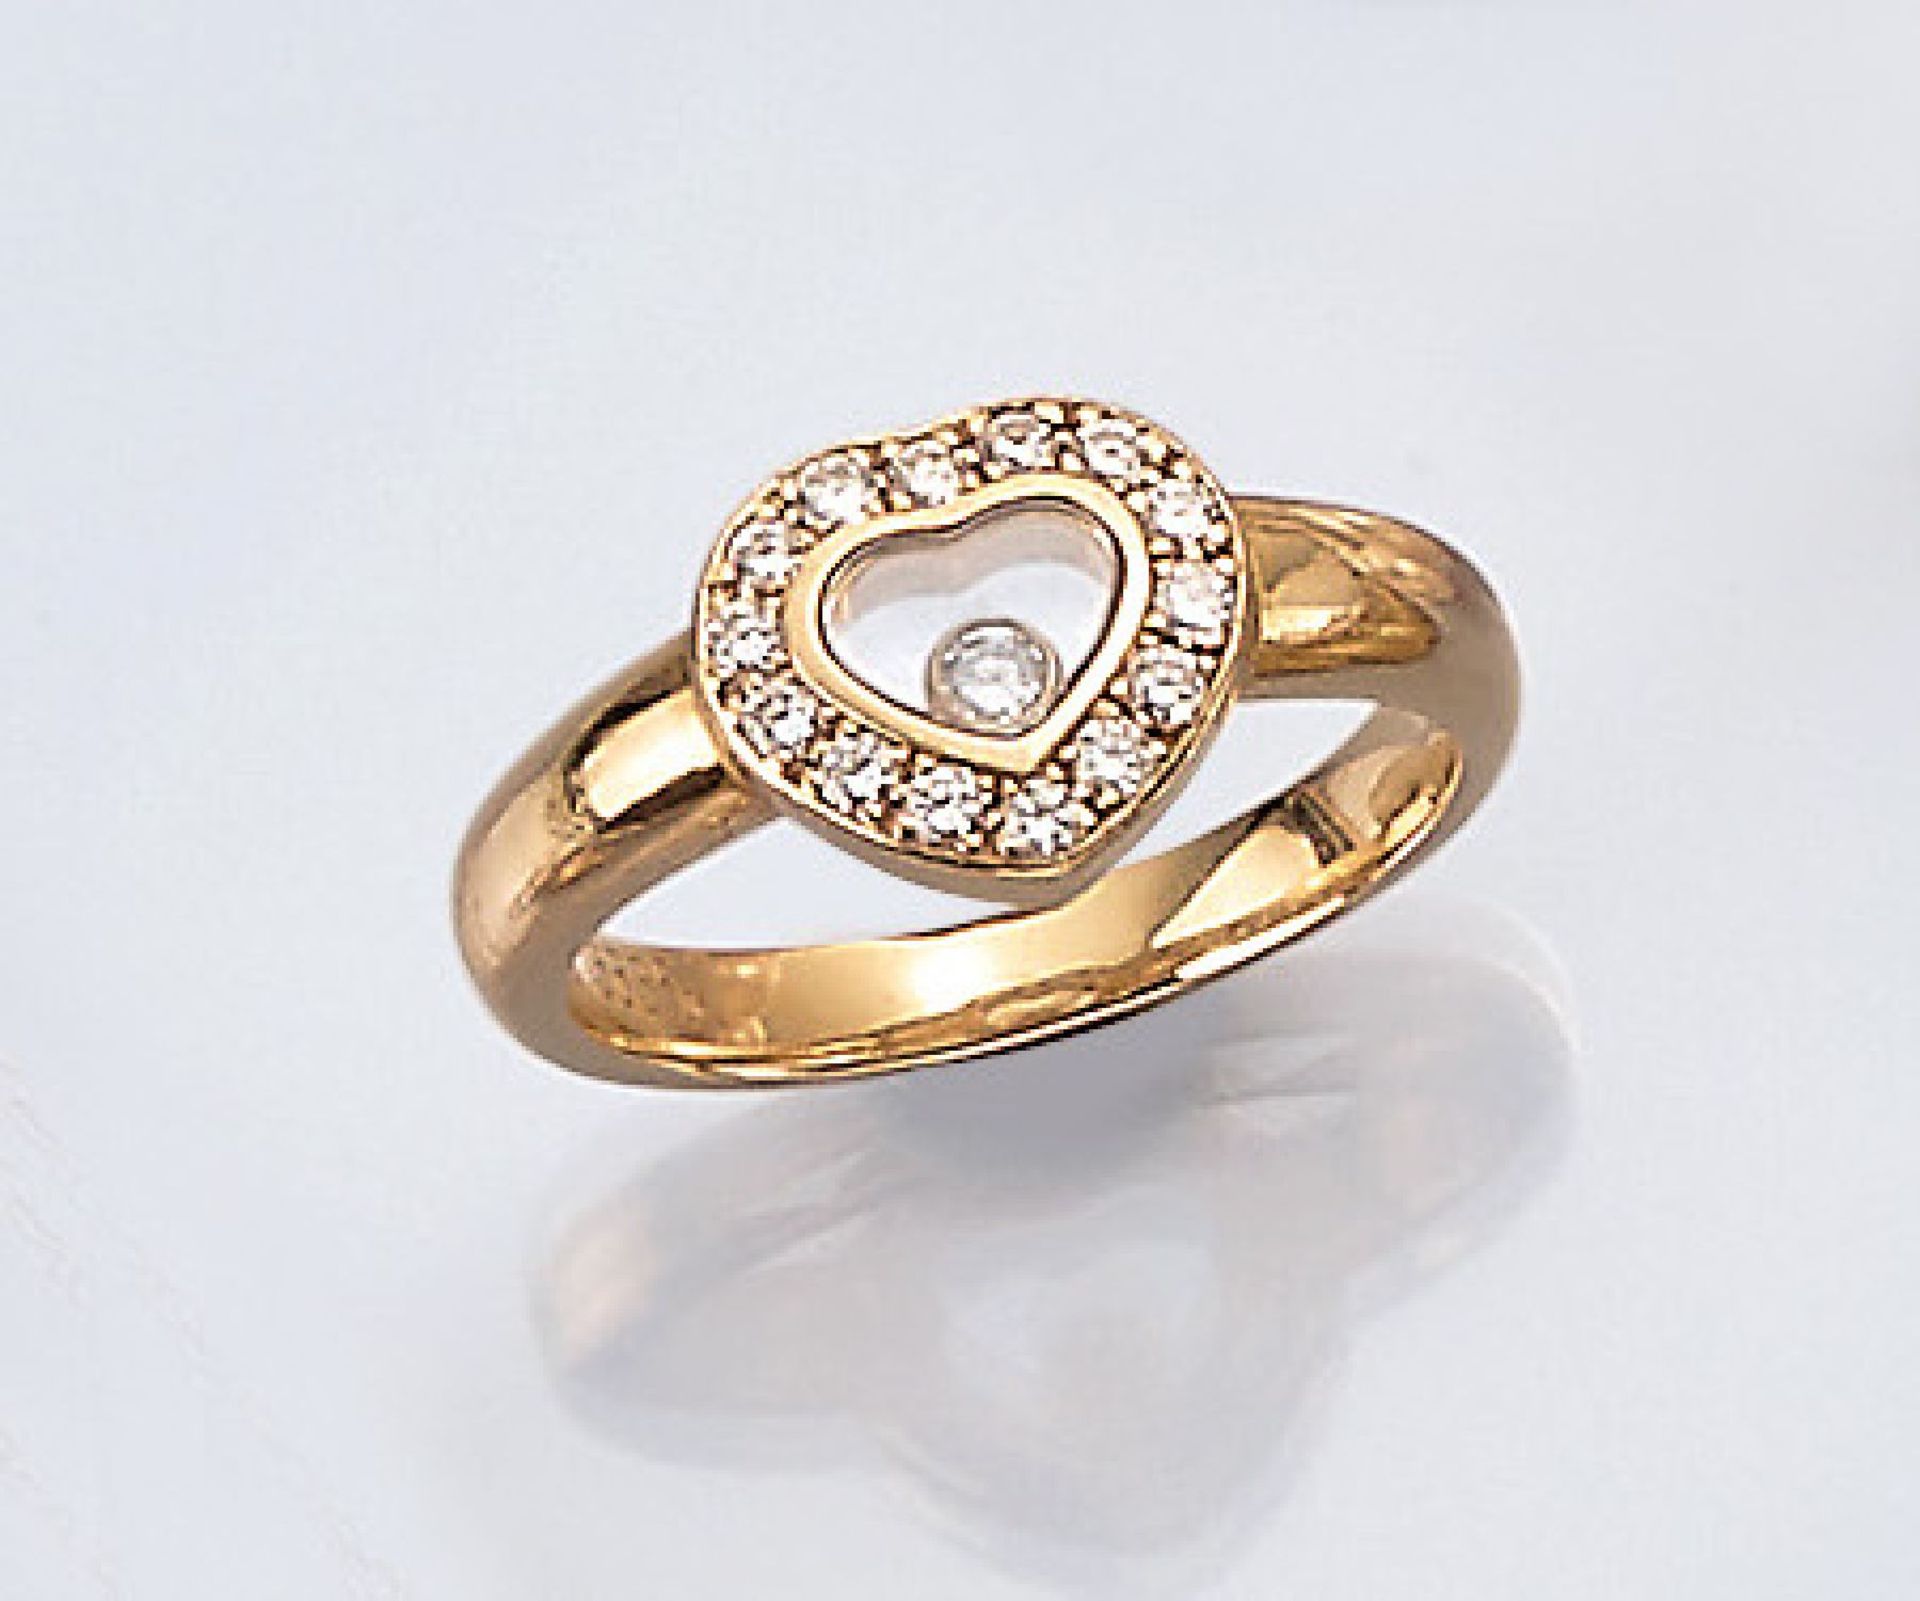 18 kt Gold CHOPARD Ring mit Brillanten, GG 750/000, aus der Serie "Happy Diamonds", bes. mit